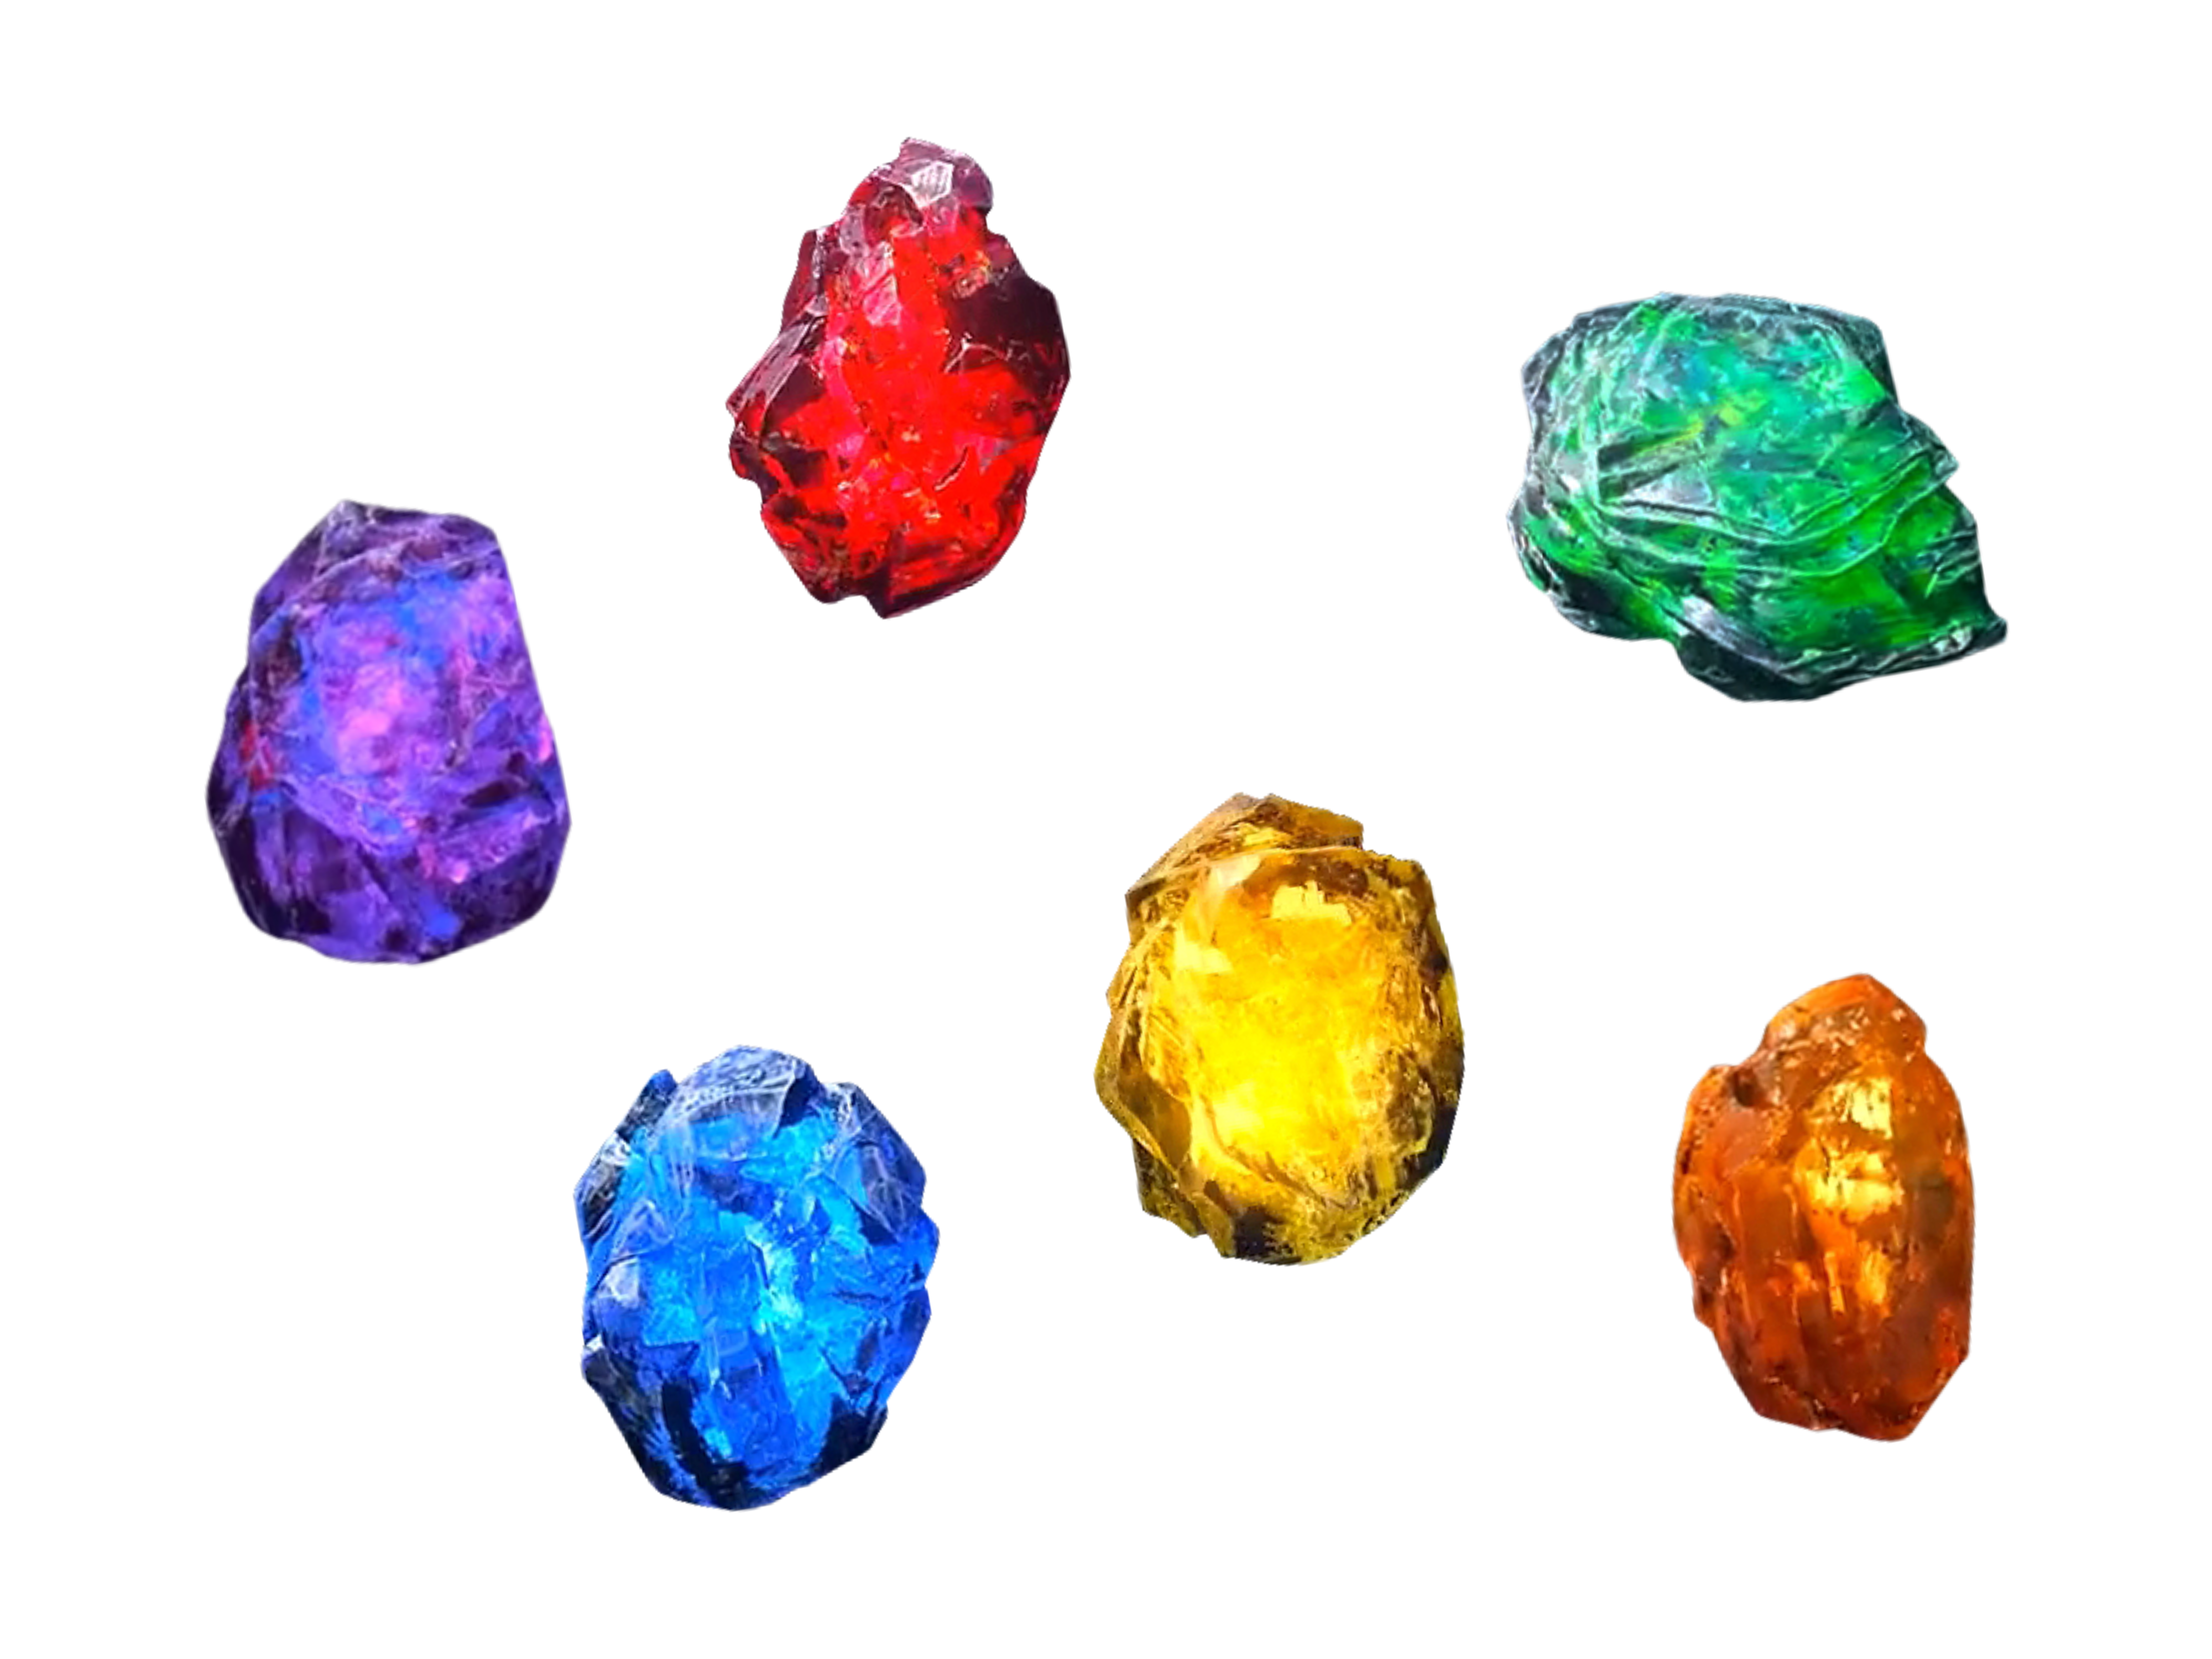 the infinity stones